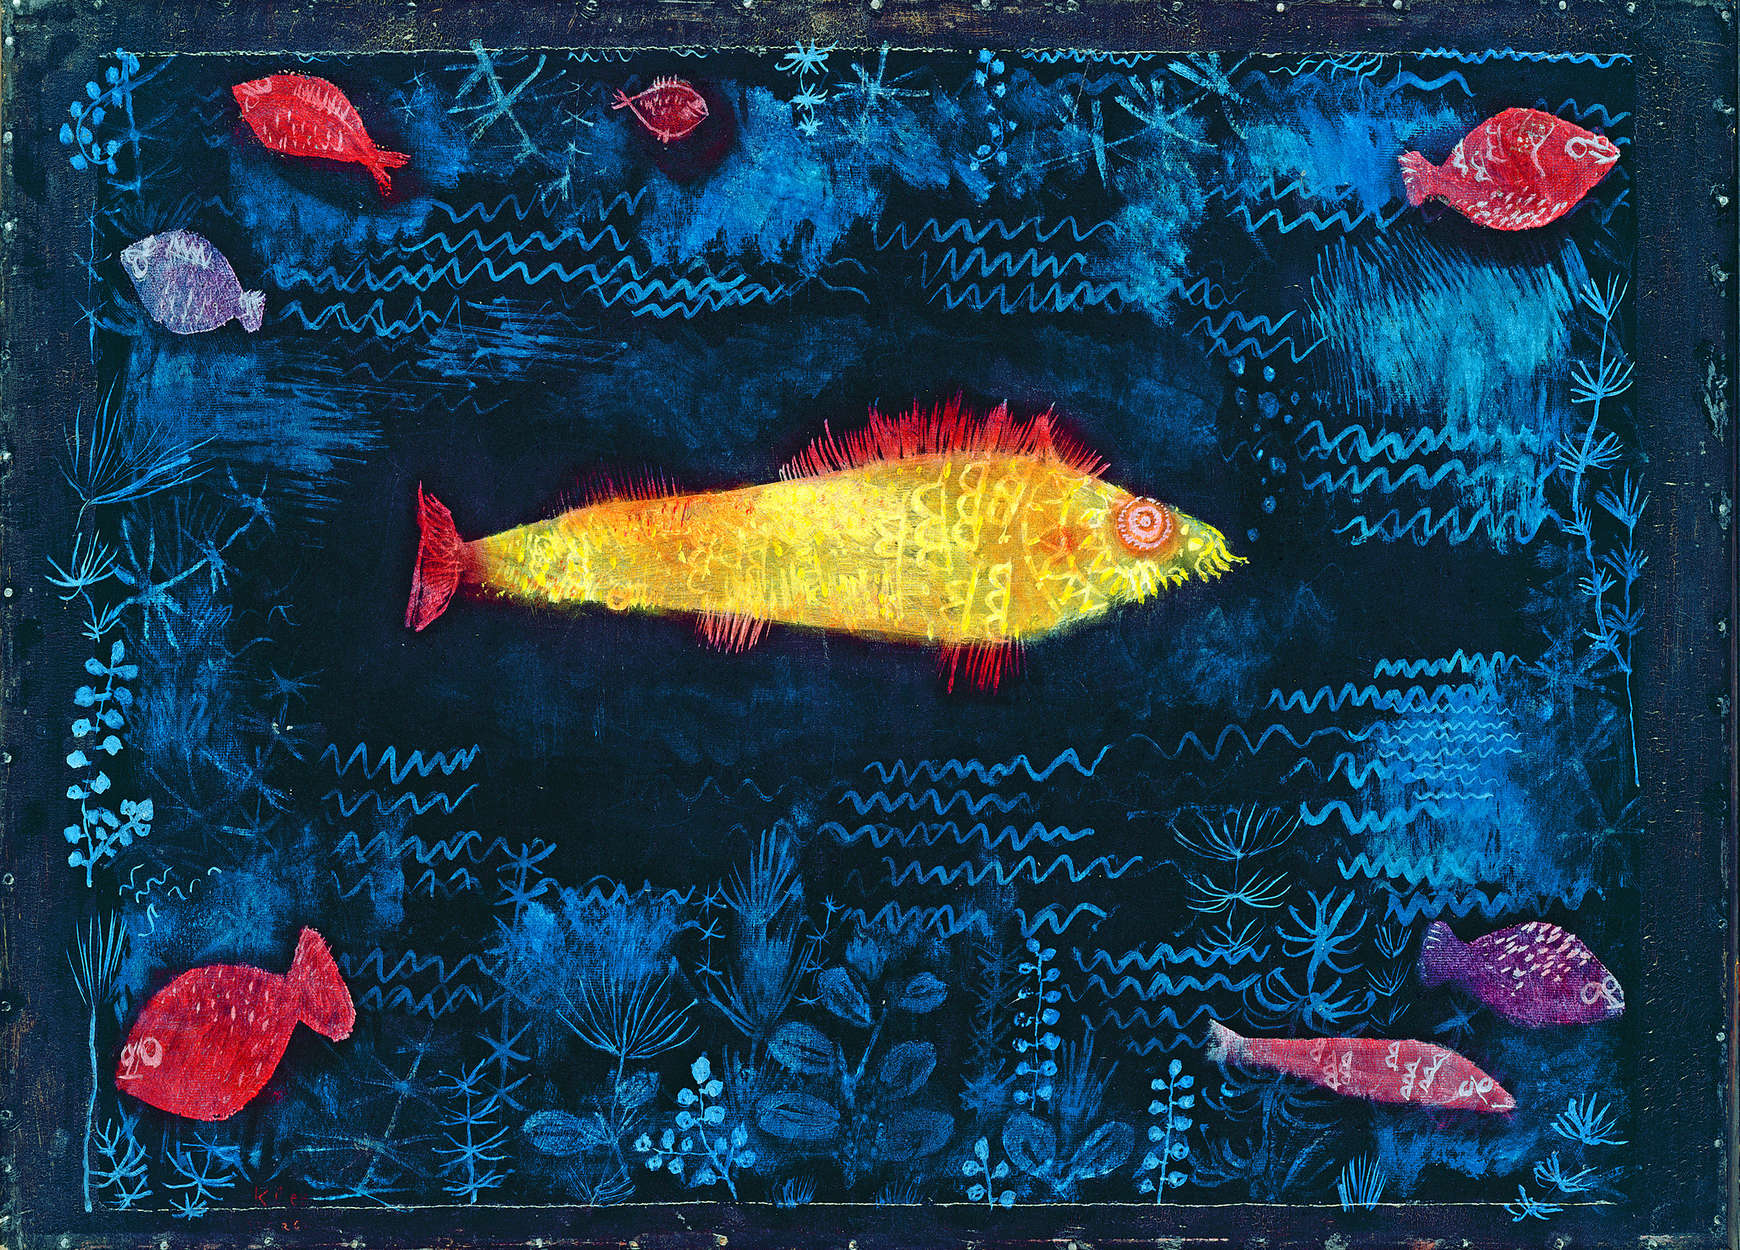             Muurschildering "De Goudvis" van Paul Klee
        